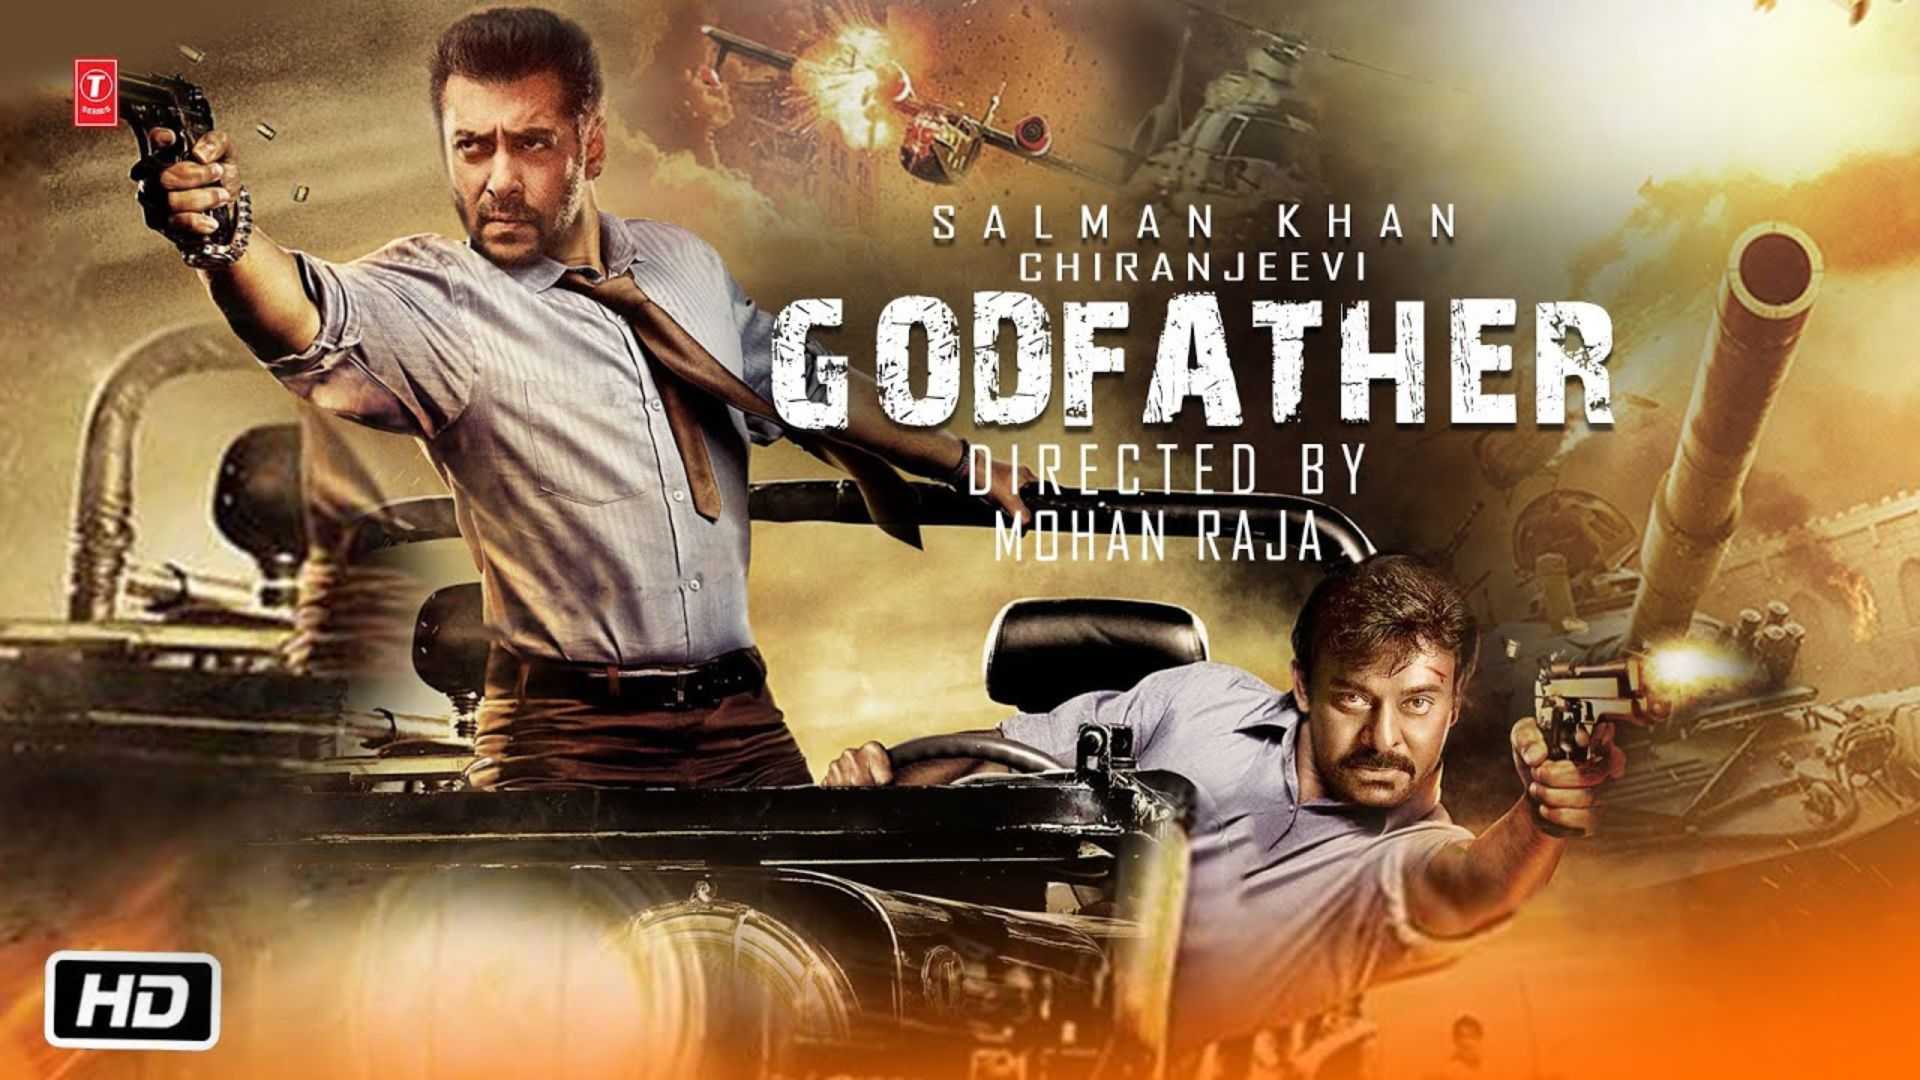 गॉडफादर फर्स्ट रिव्यू: धांसू एक्शन के बाद भी एवरेज है चिरंजीवी और सलमान खान की फिल्म